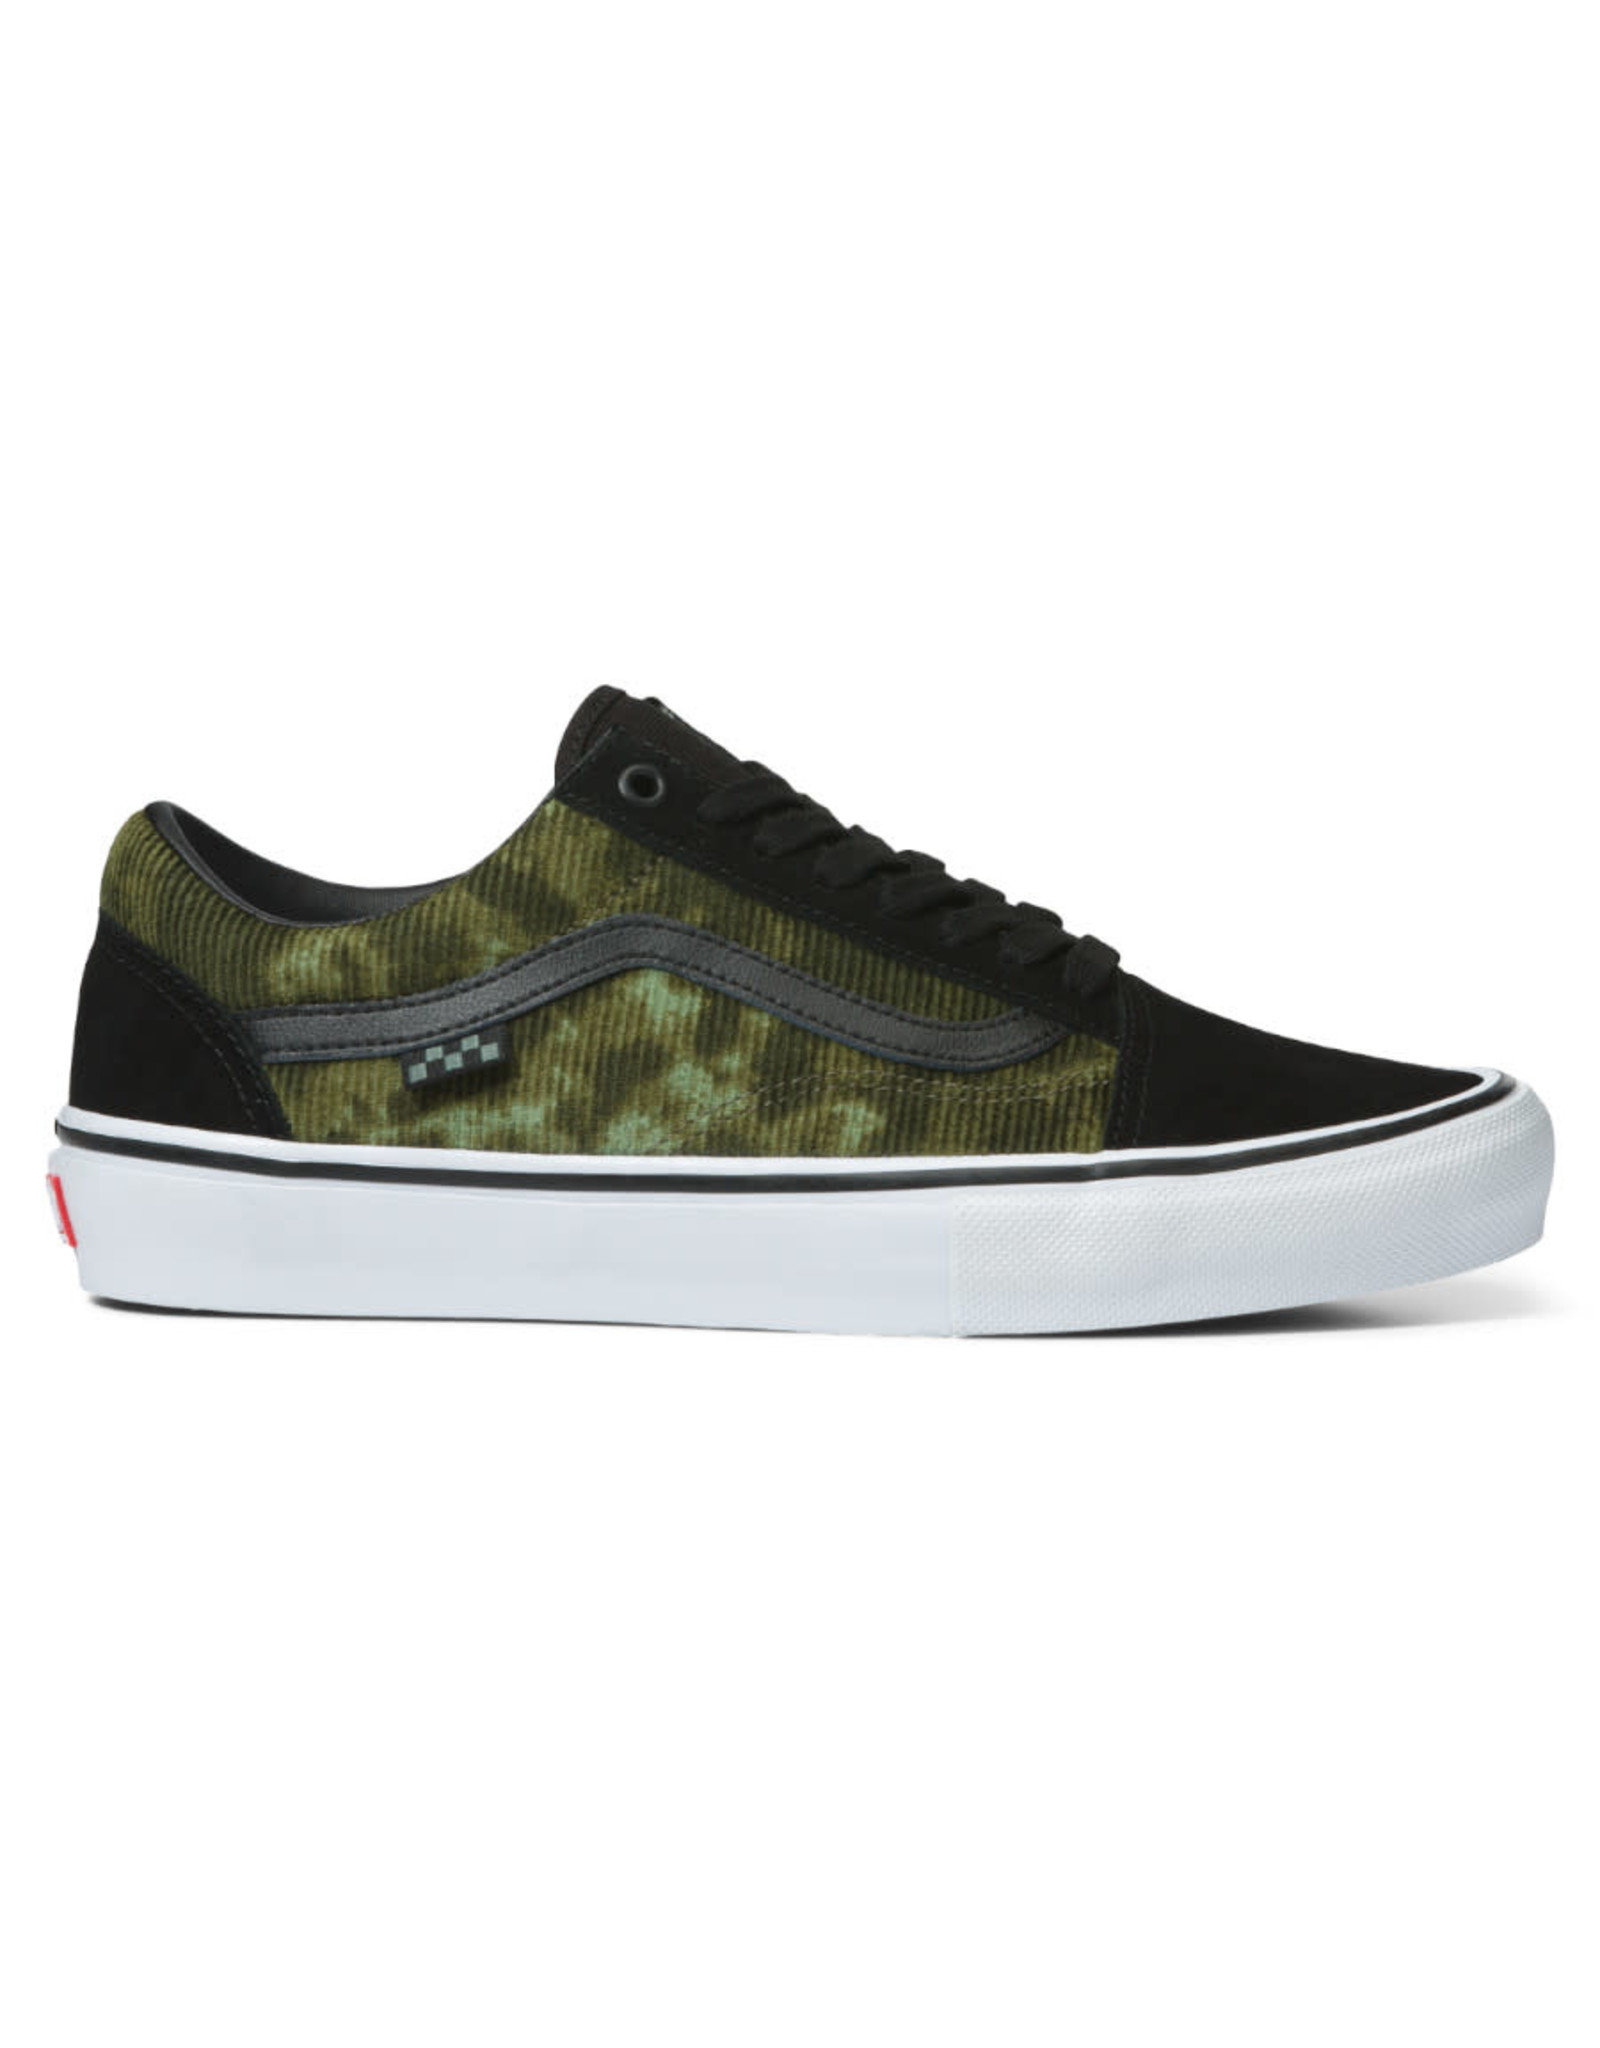 Vans Vans Shoe Skate Old Skool Cord (Tie-Dye/Black)